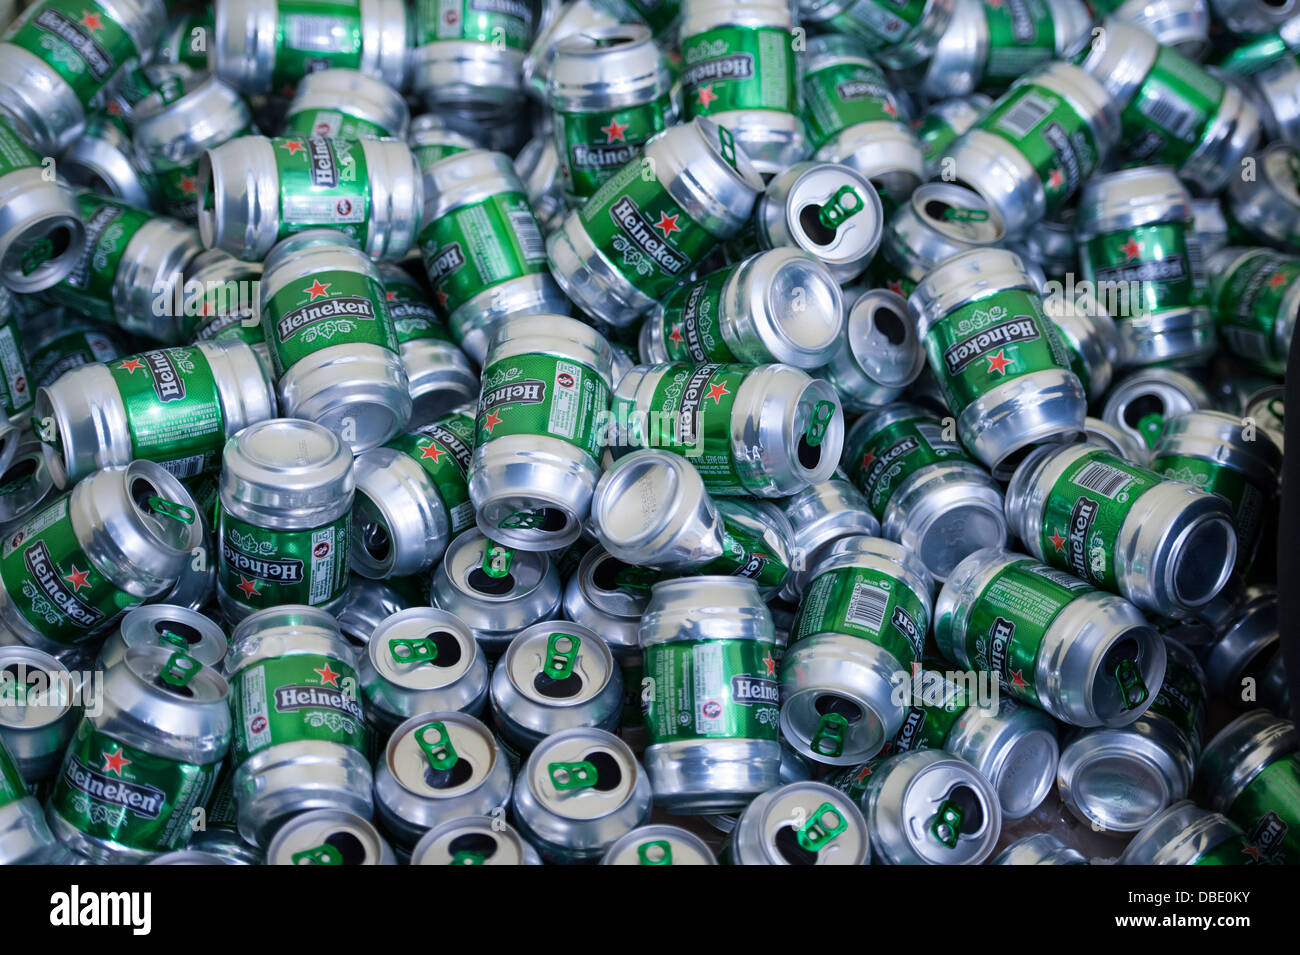 many empty beer cans heineken brand Stock Photo